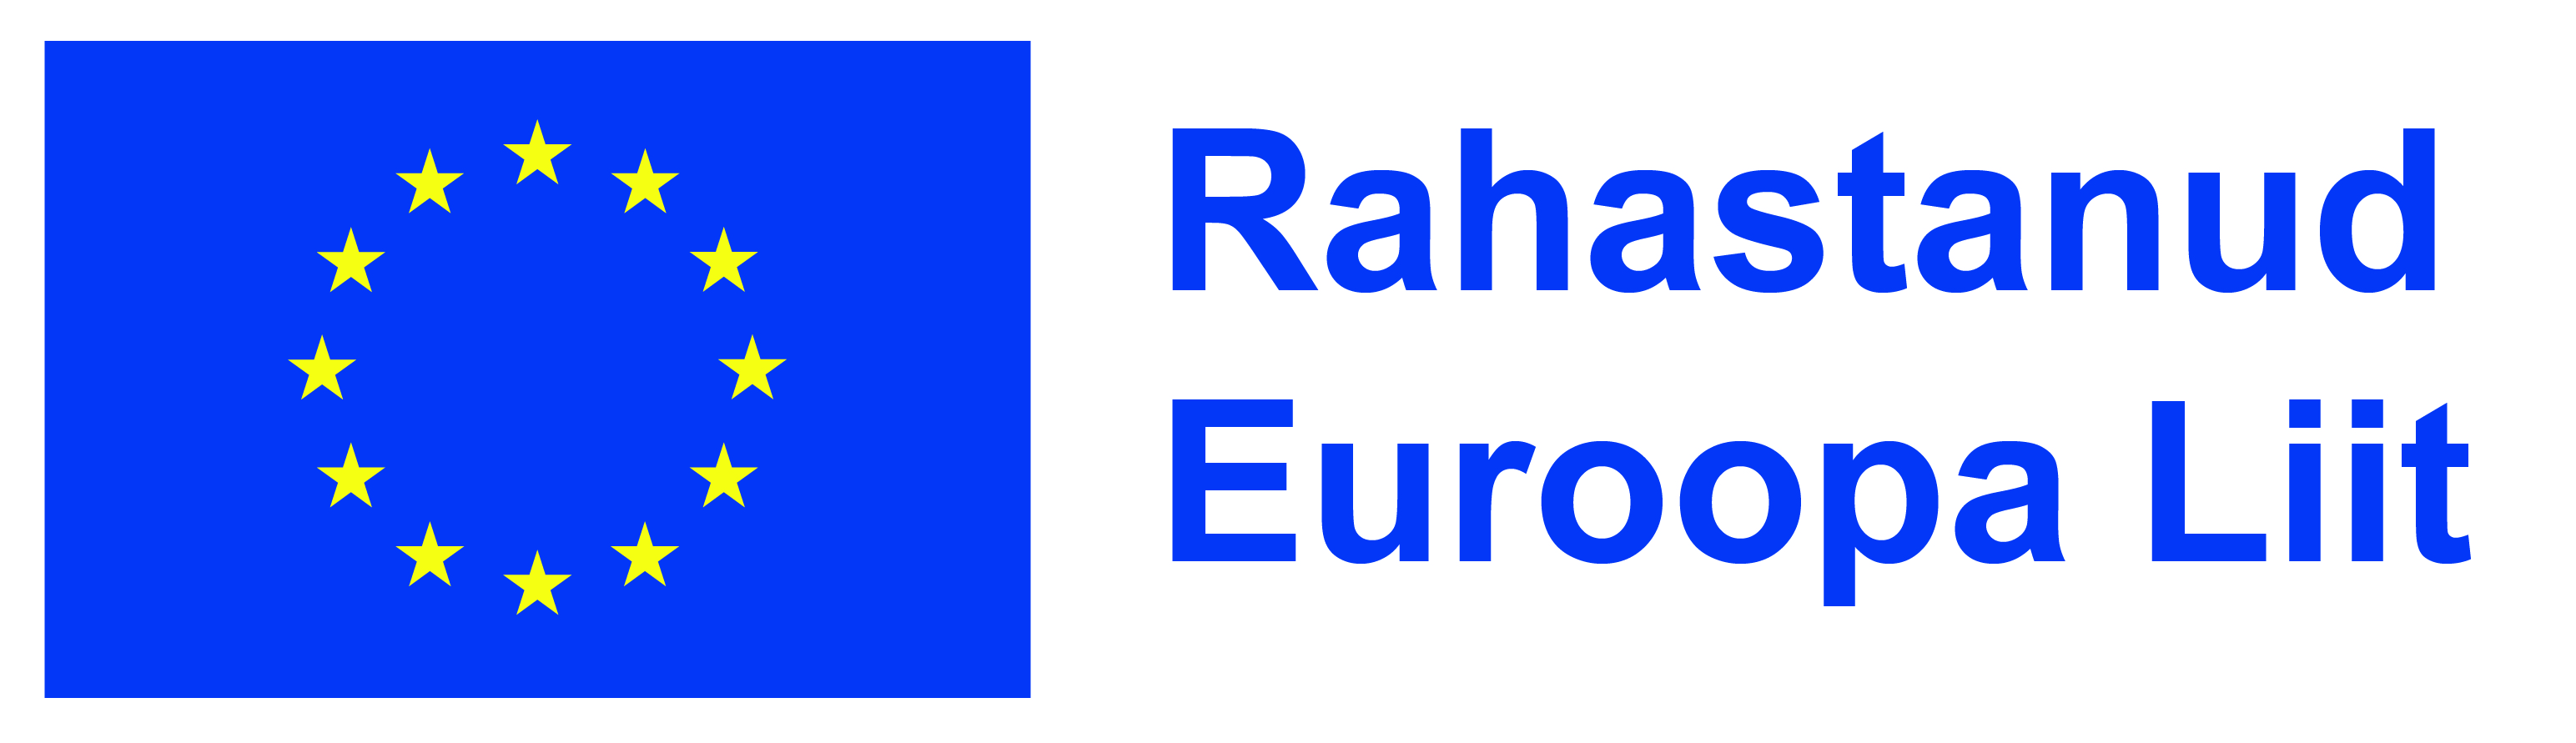 Rahastanud Euroopa Liit logo